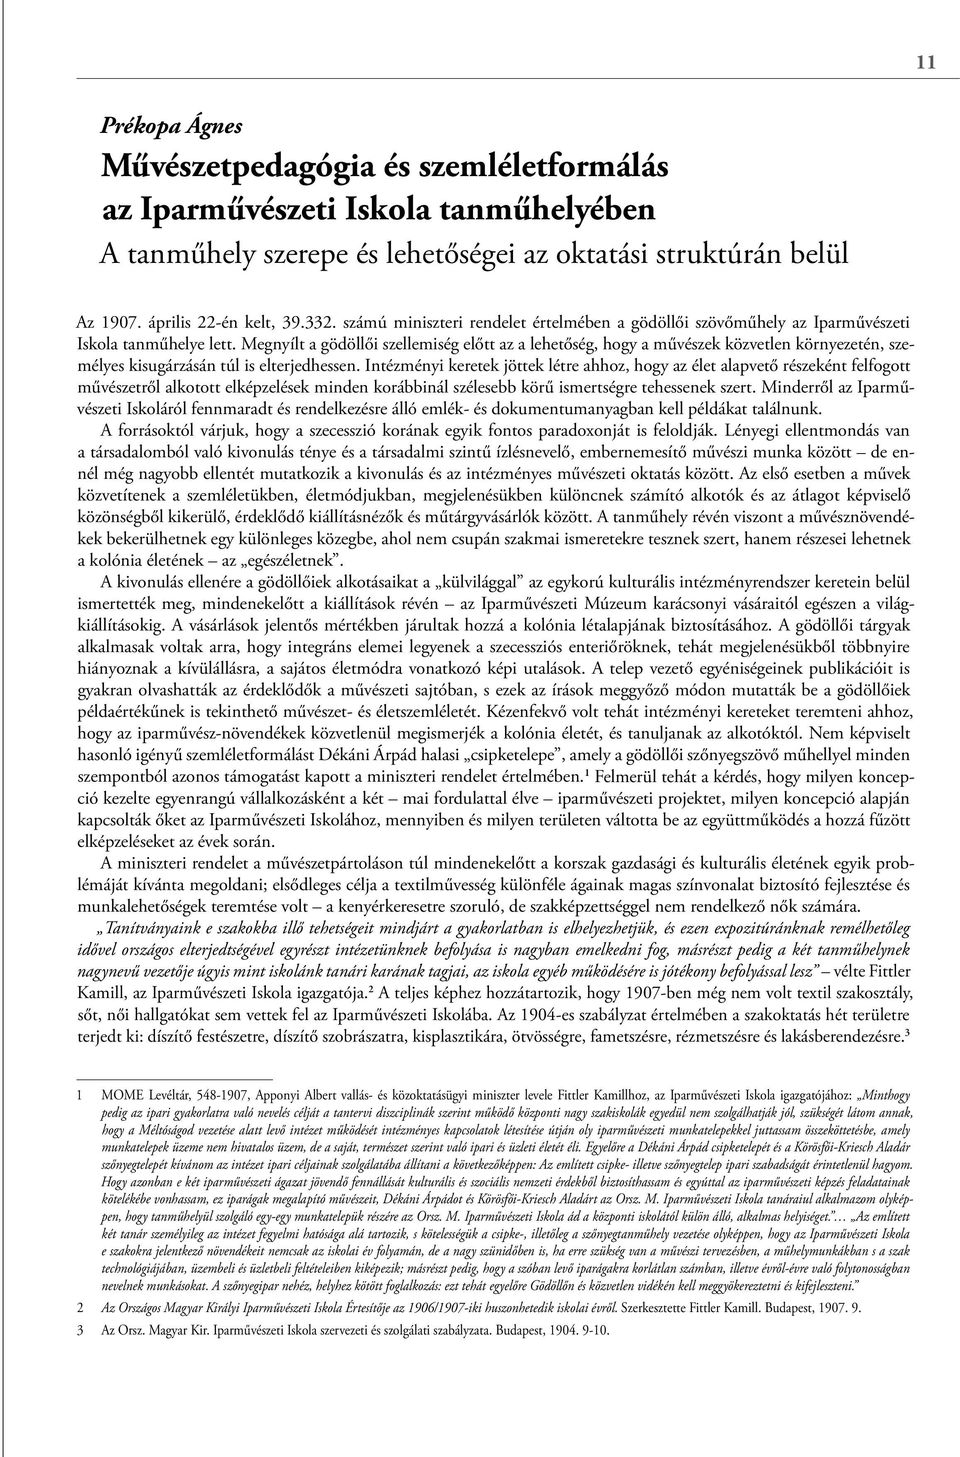 Tanulmányok a 20. századi magyar textilmûvészet történetéhez - PDF Ingyenes  letöltés